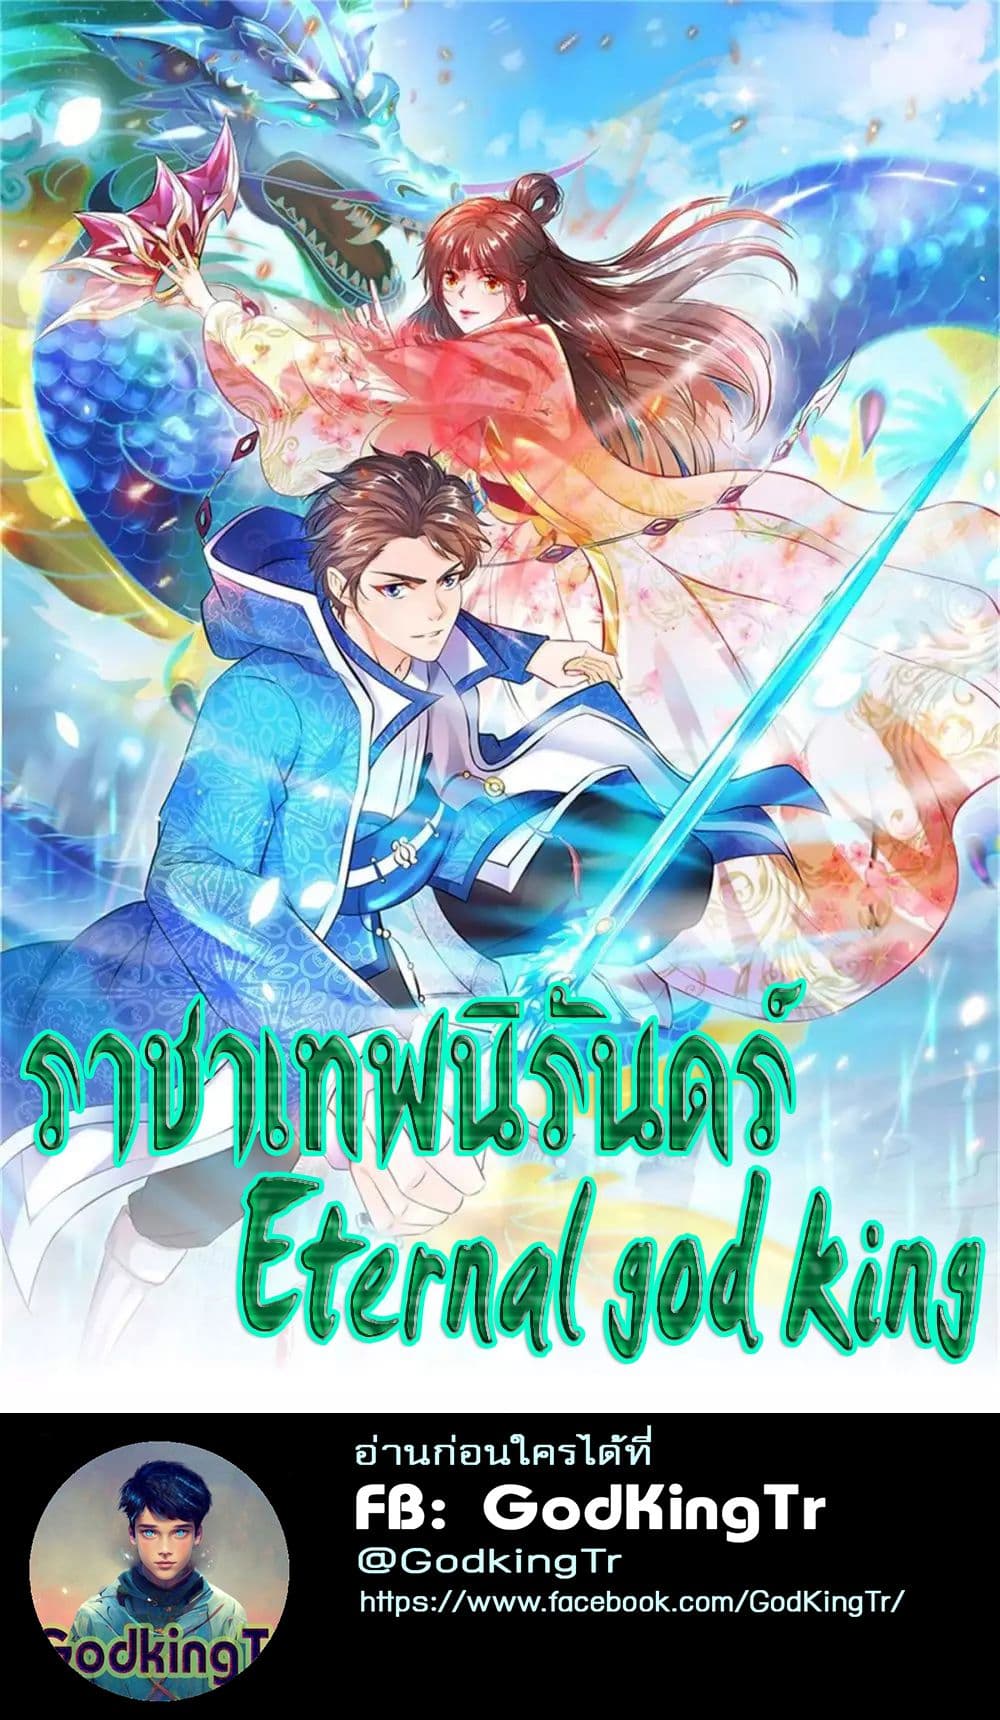 Eternal god King 28 01